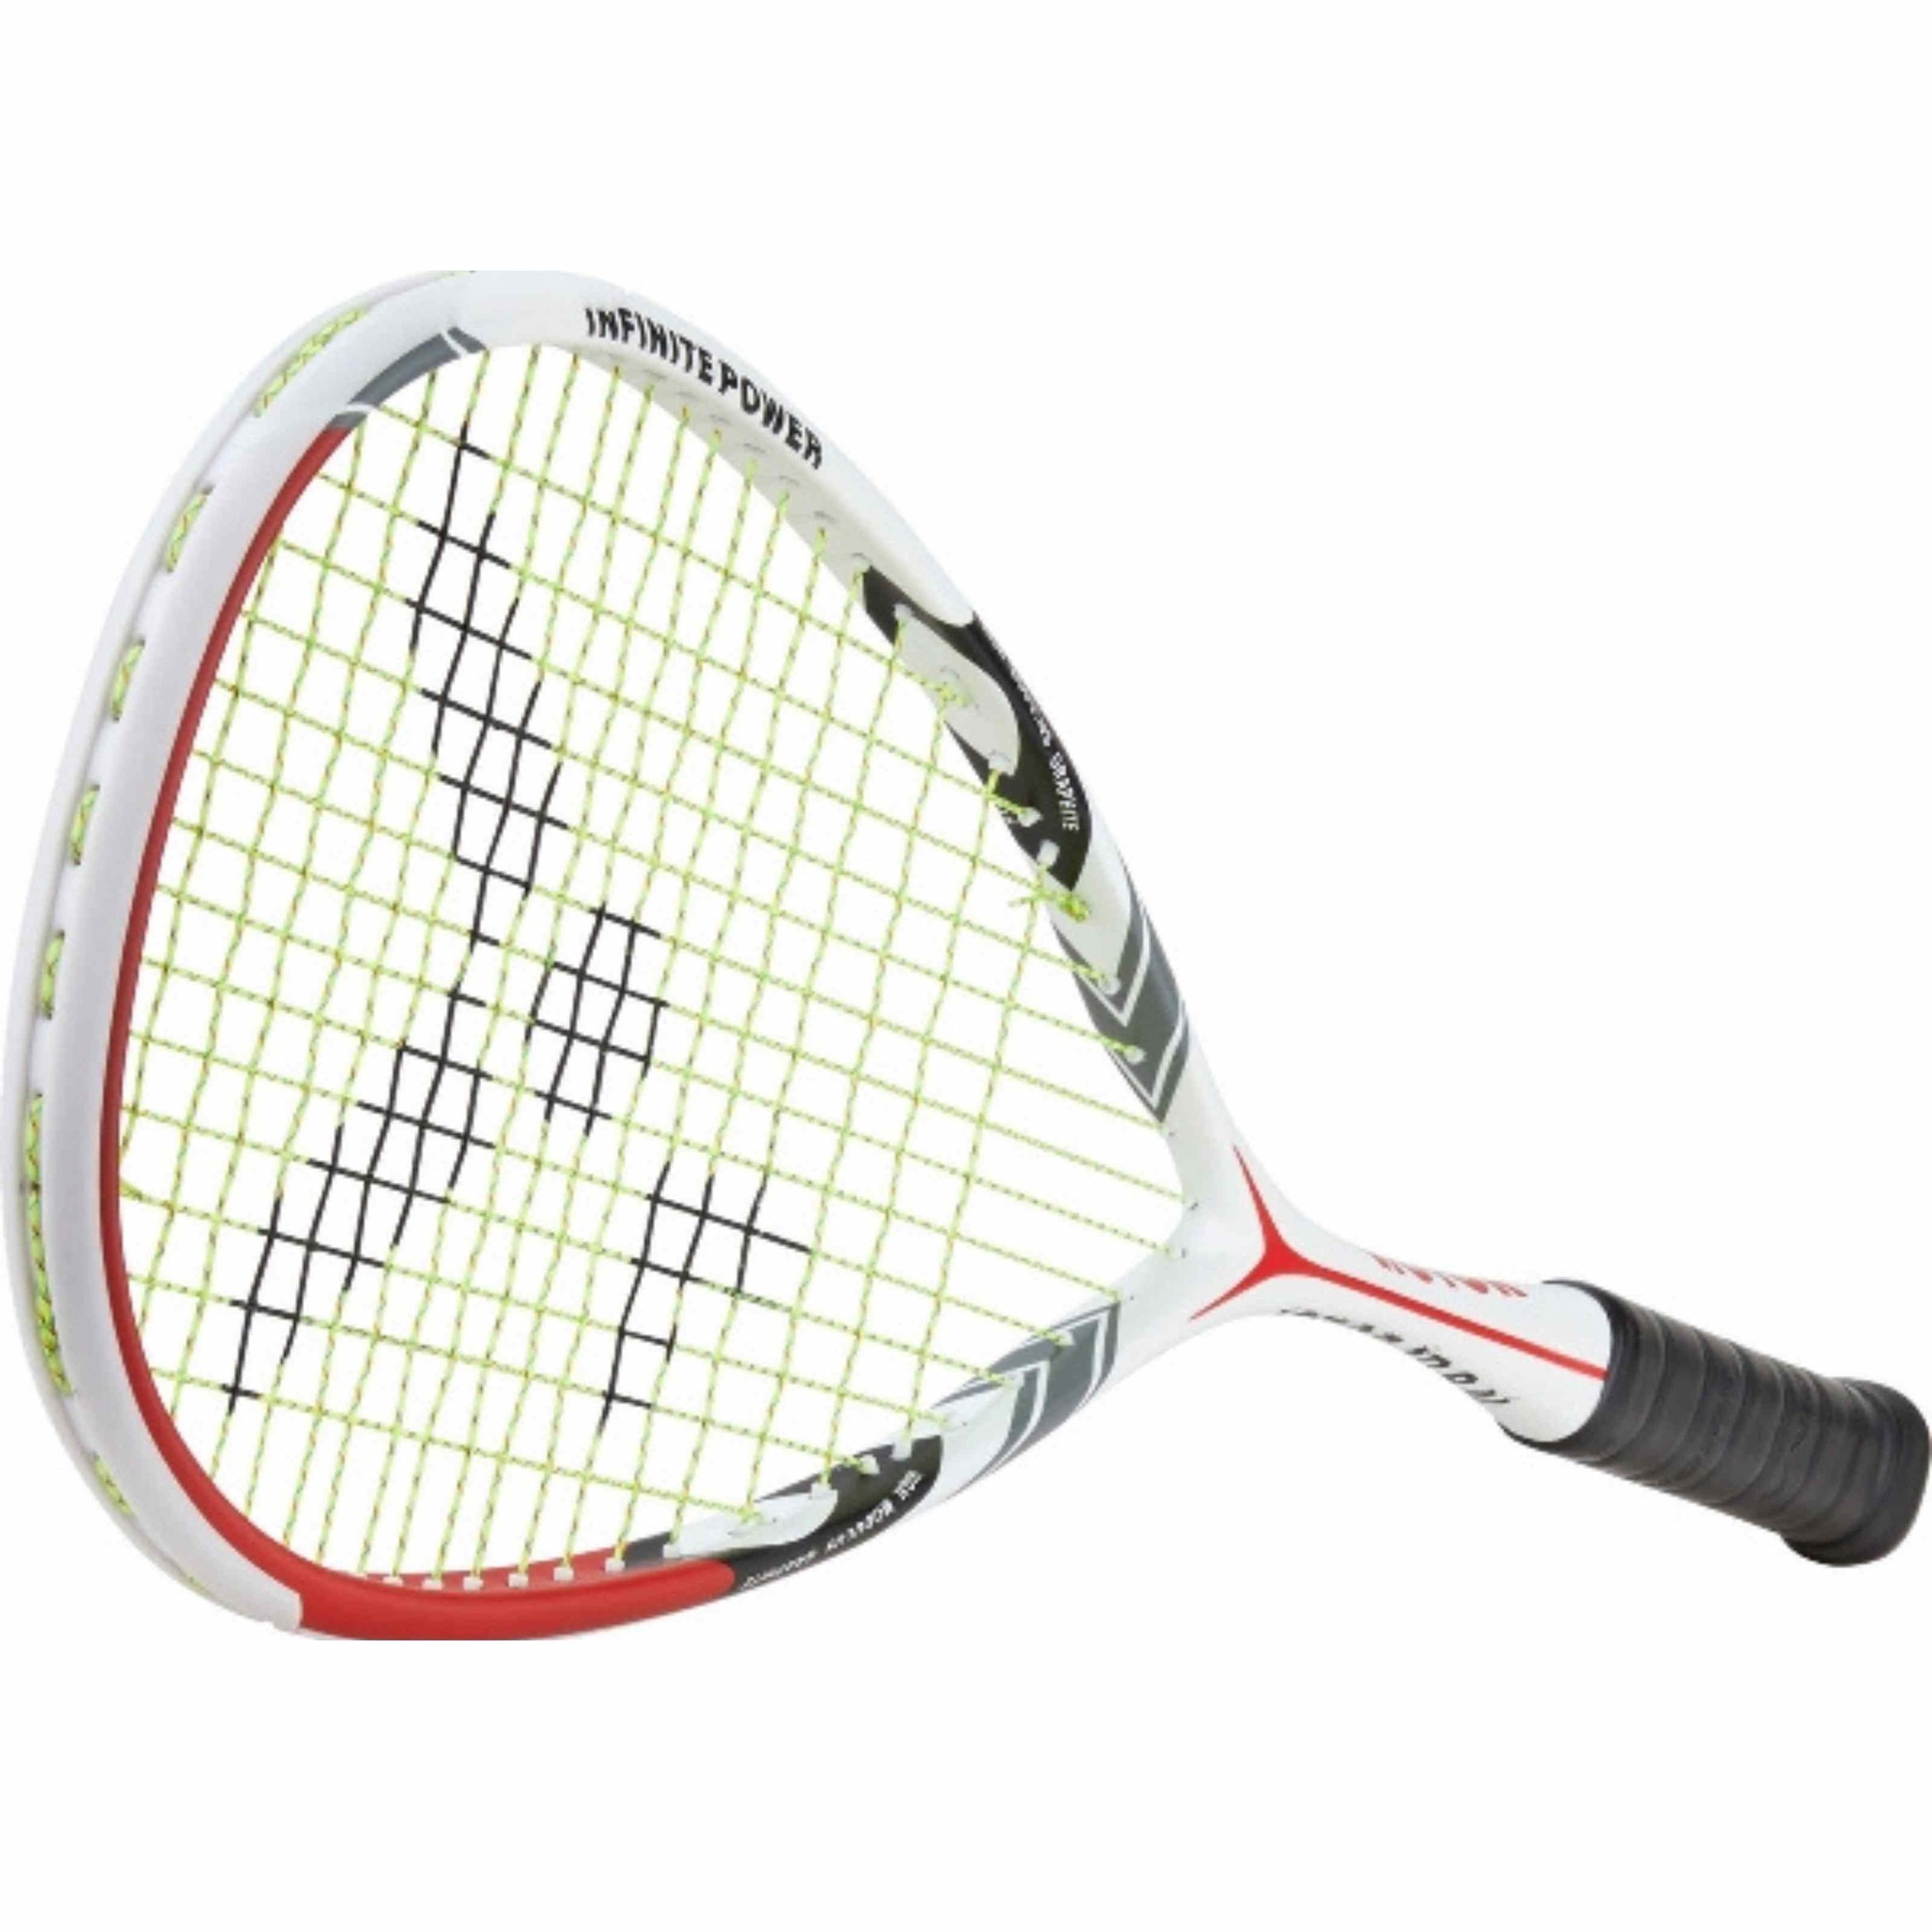 Worstelen vlotter blaas gat Victor IP 8 N squash racket bestellen? - KW FLEX racket speciaalzaak